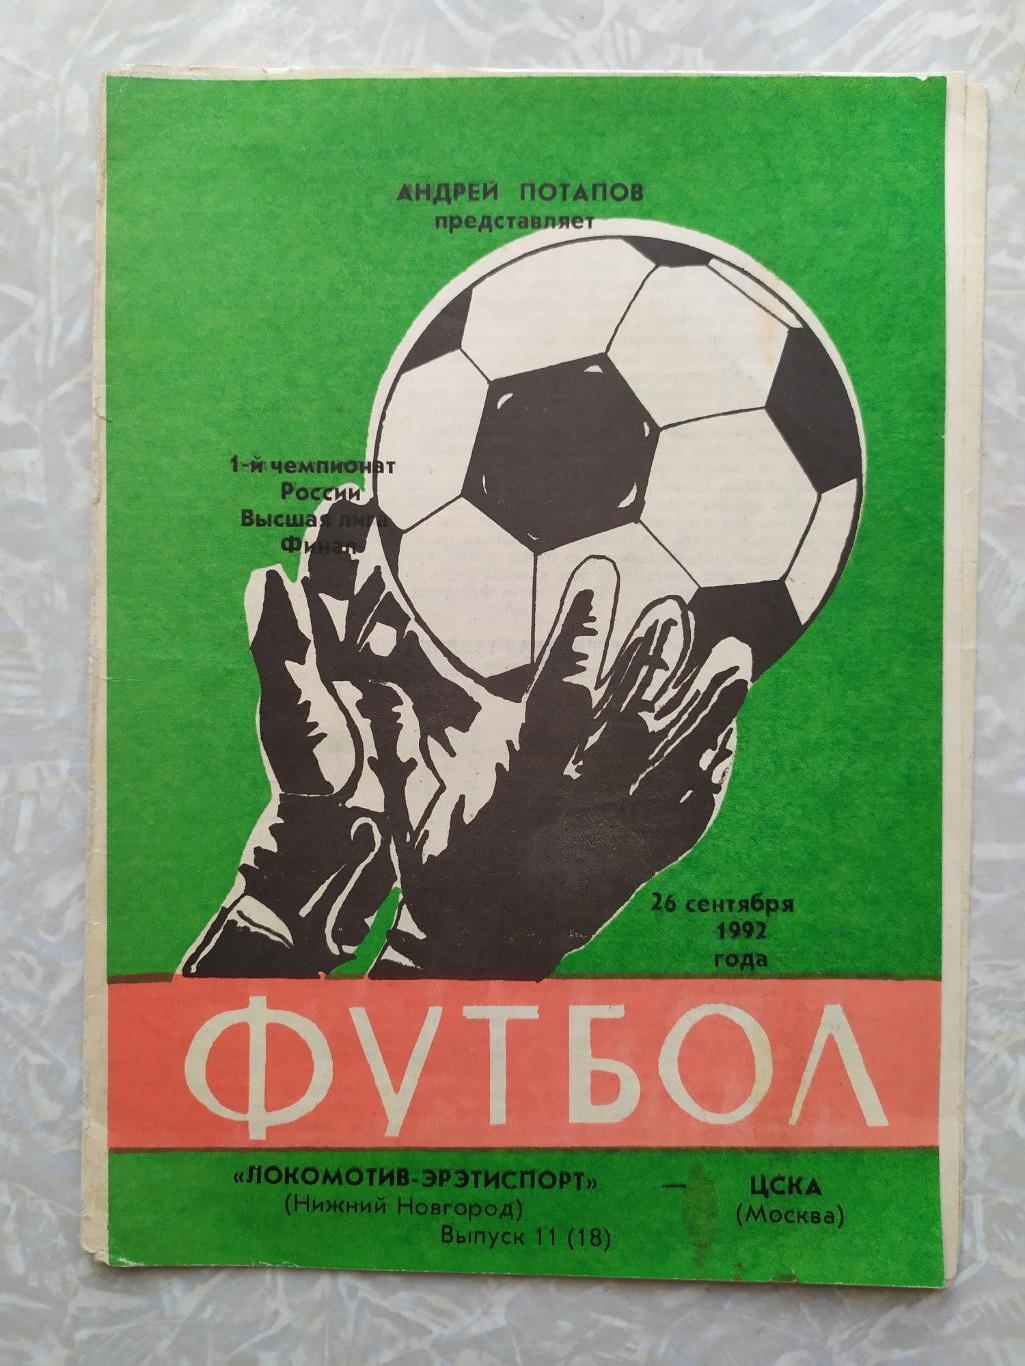 Локомотив Нижний Новгород-ЦСКА 26.09.1992